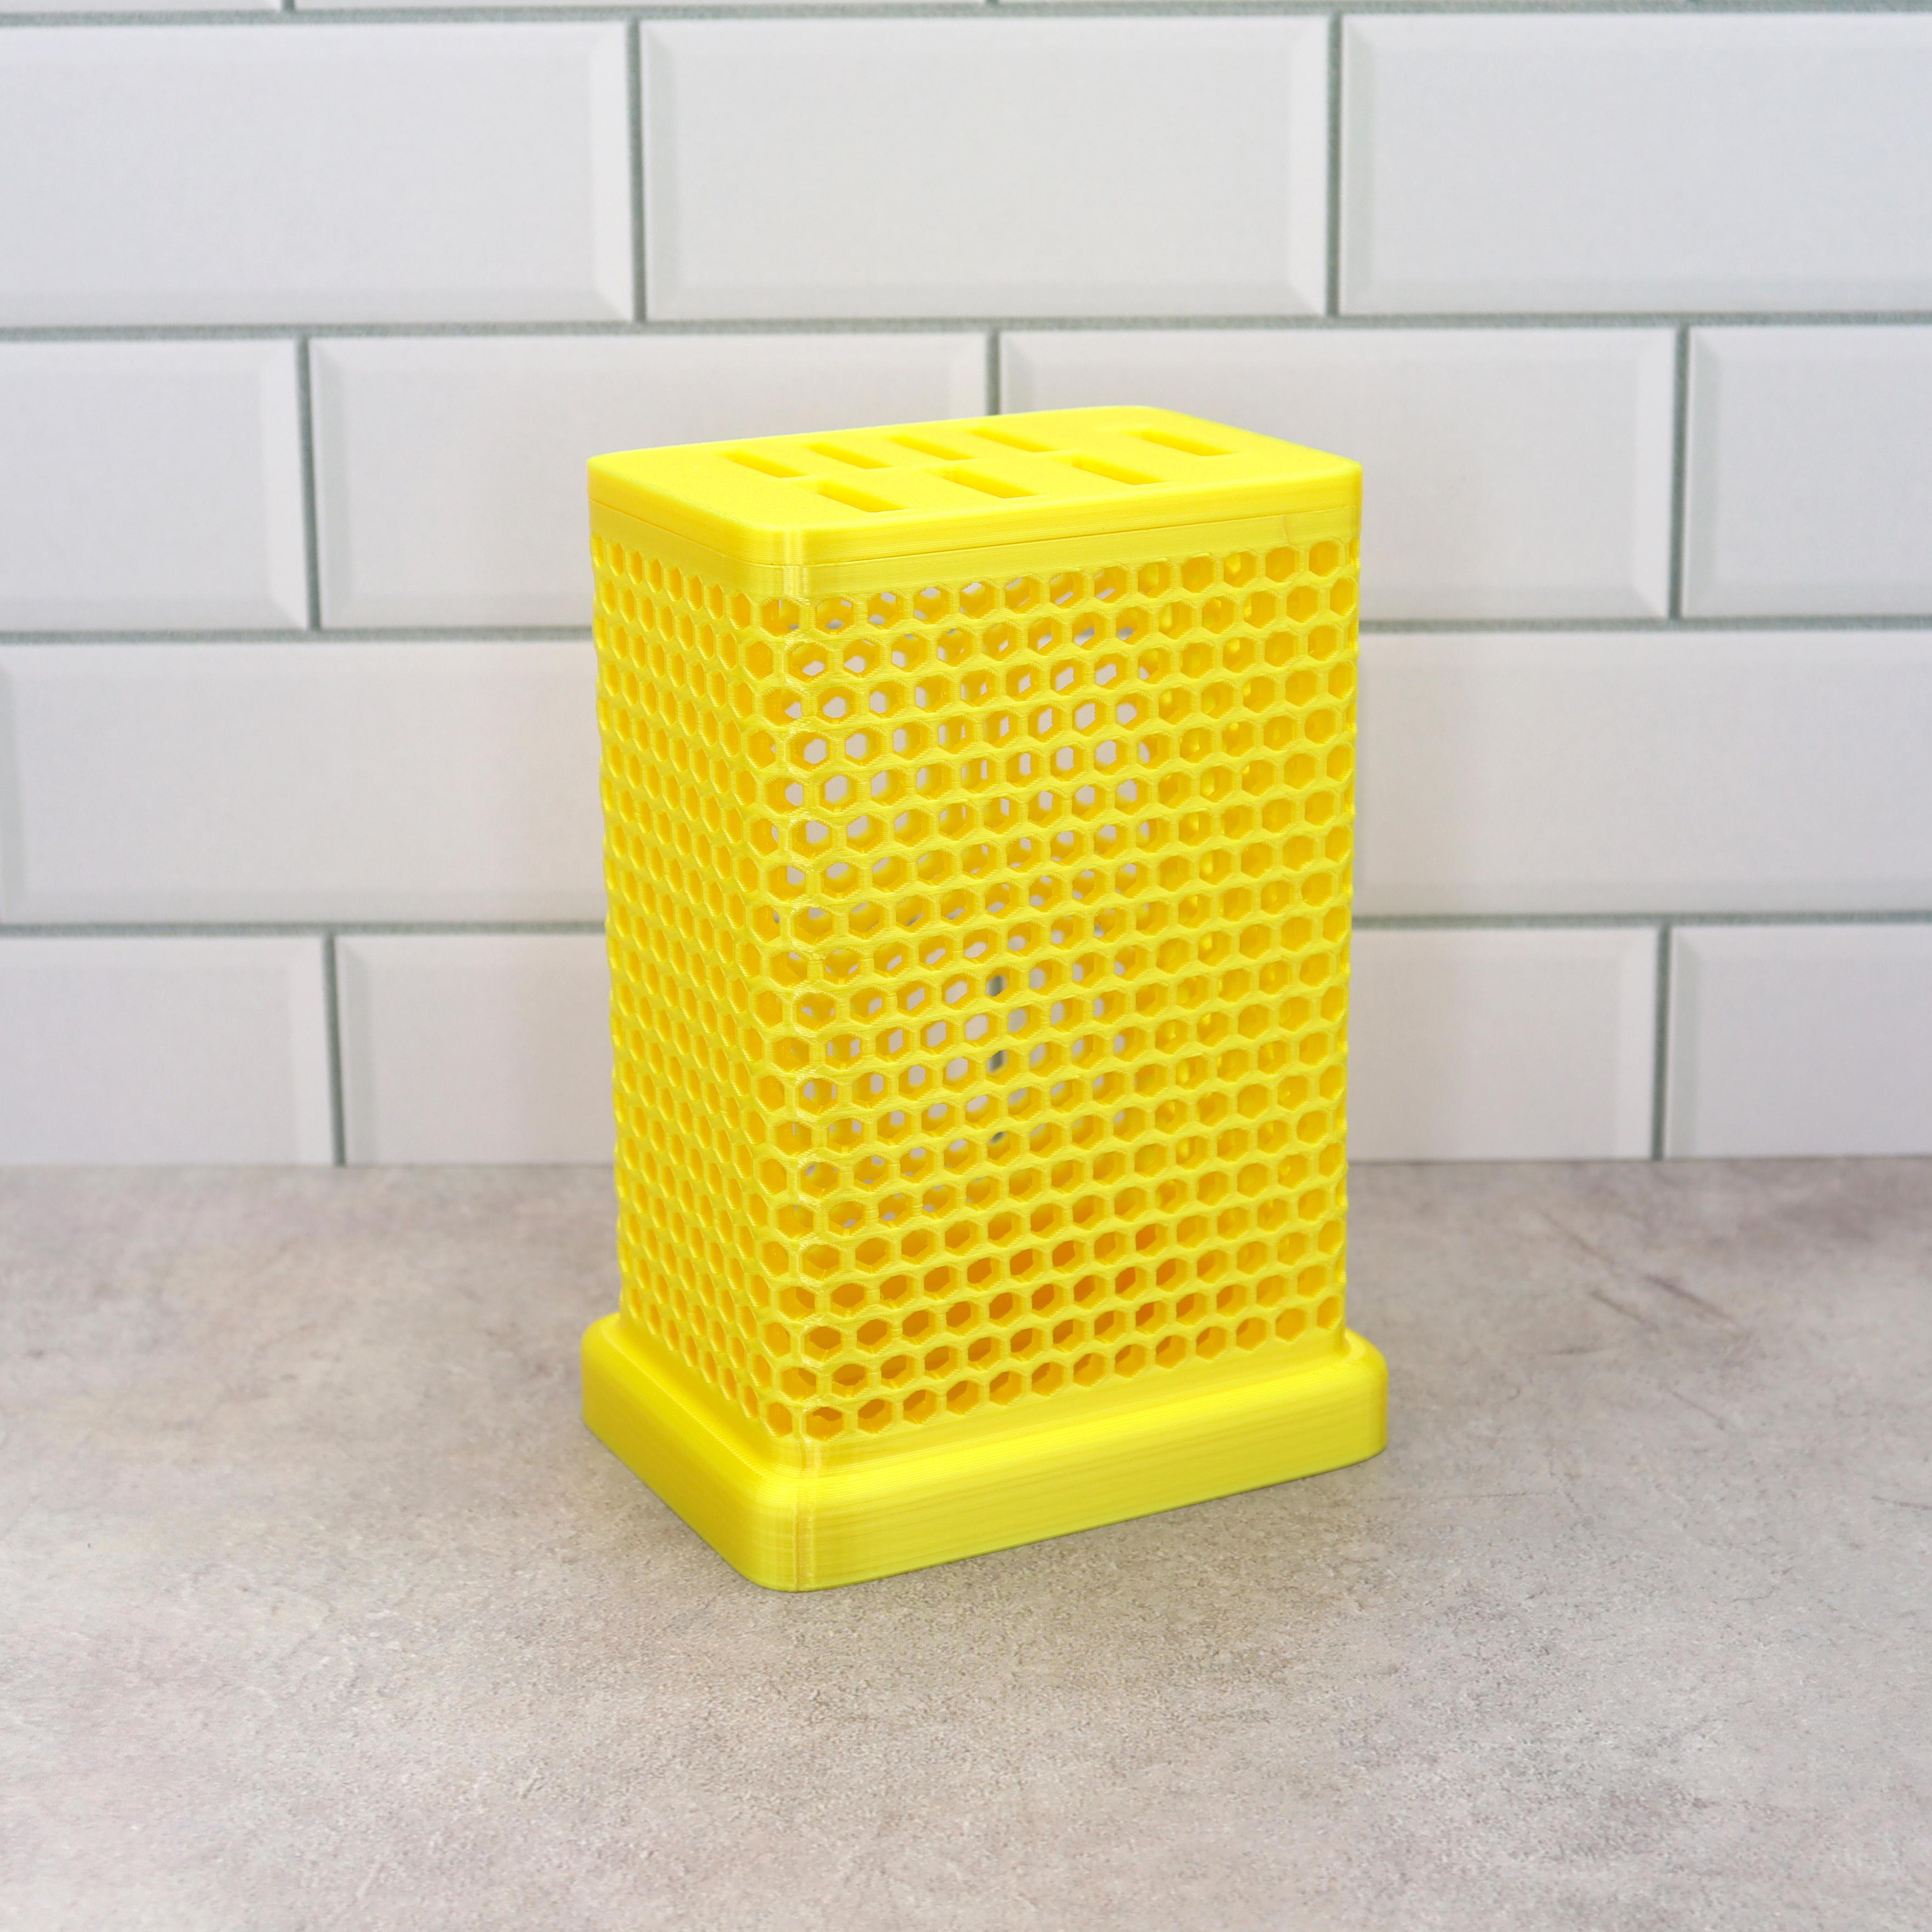 Honeycomb dish rack 3d model